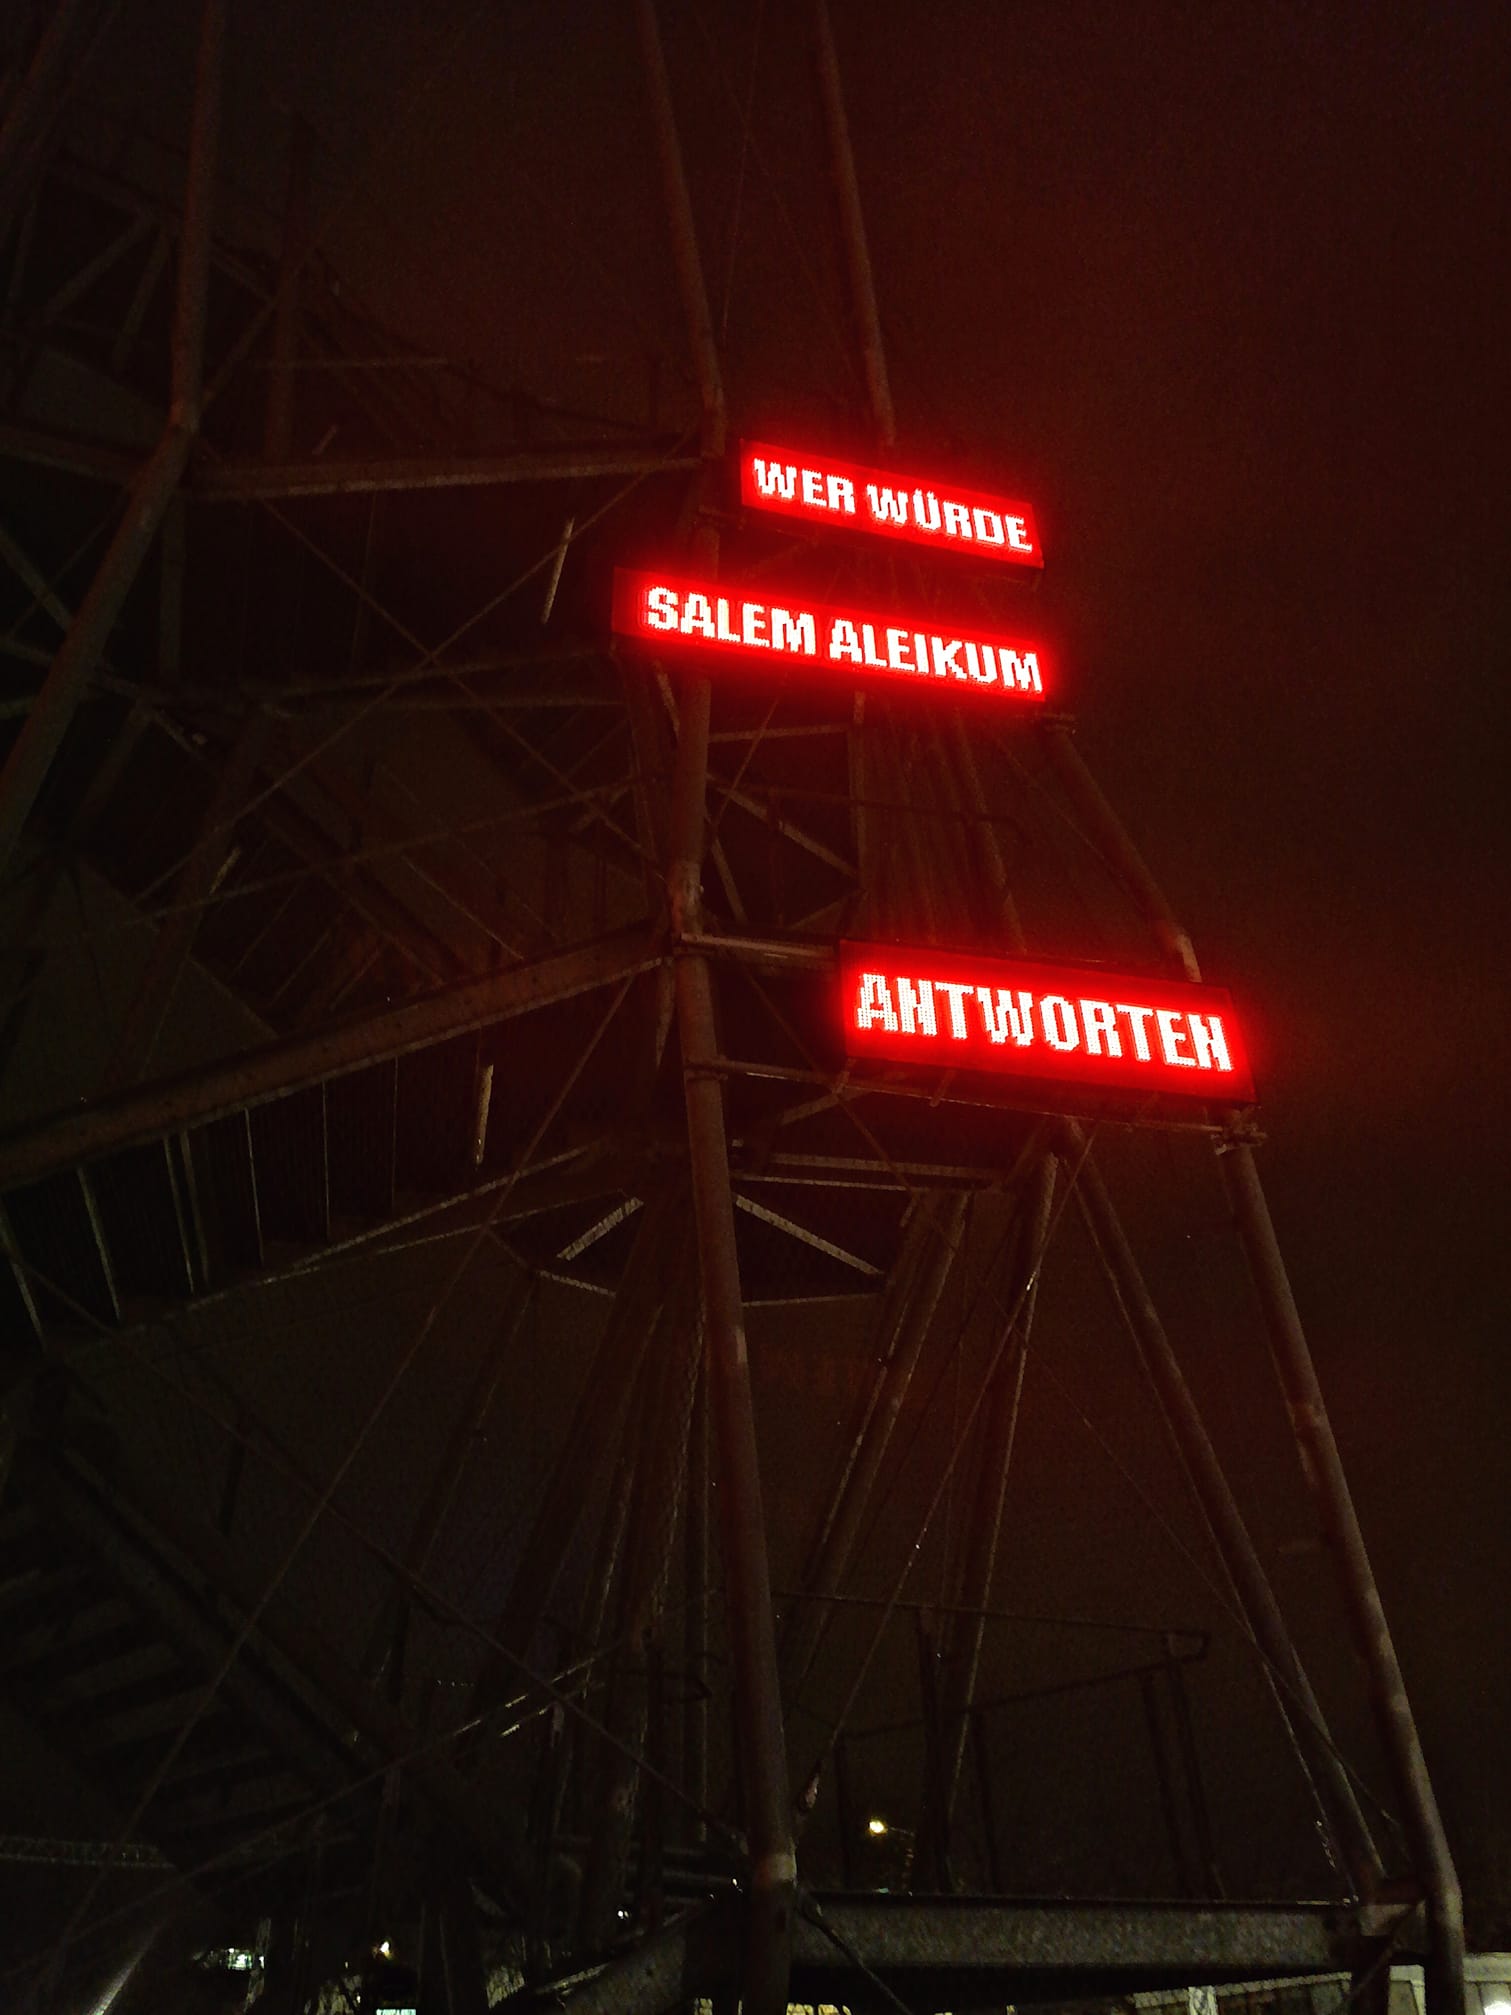 Eine LED-Installation an der Fluchttreppe des Landhauses zeigt aufgeteilt in drei Abschnitte untereinander die Worte "WER WÜRDE / SALEM ALEIKUM / ANTWORTEN" 